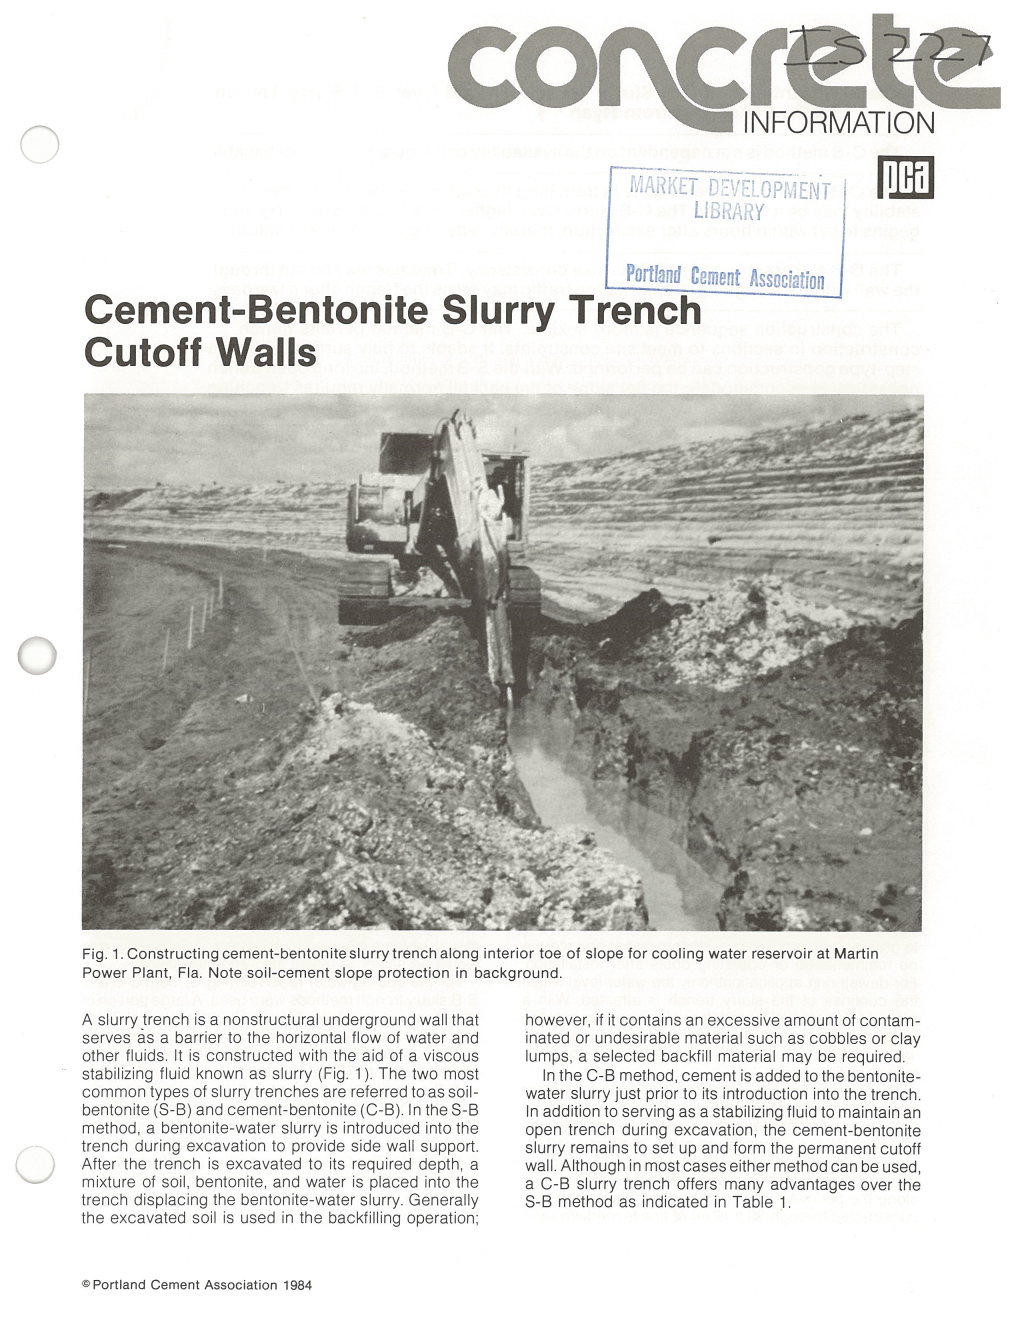 Cement-Bentonite Slurry Trench Cutoff Walls